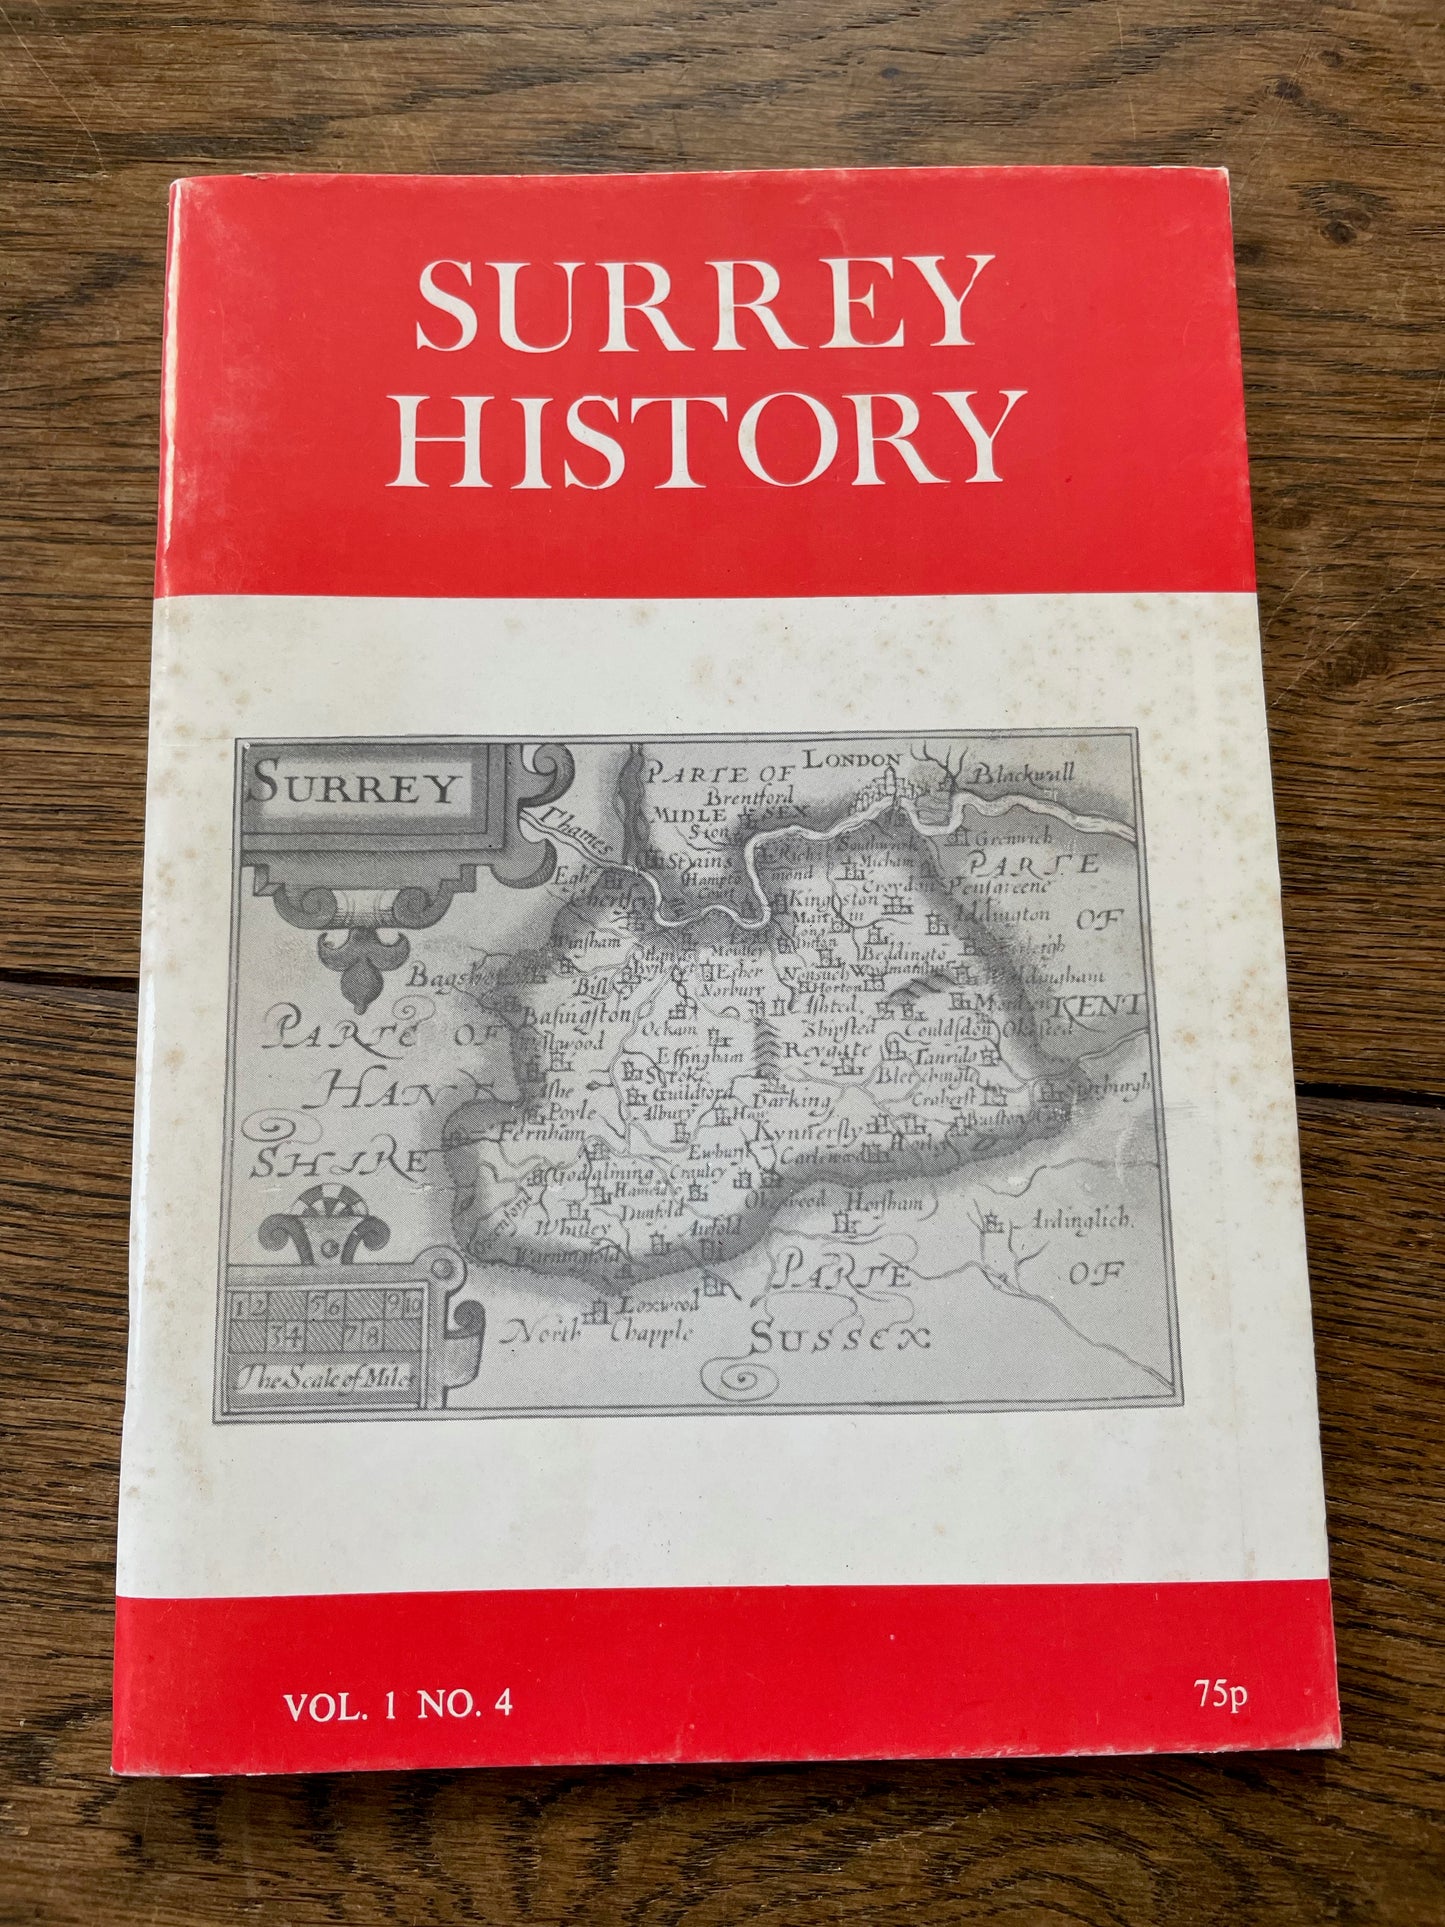 Surrey History Vol. 1 No. 4